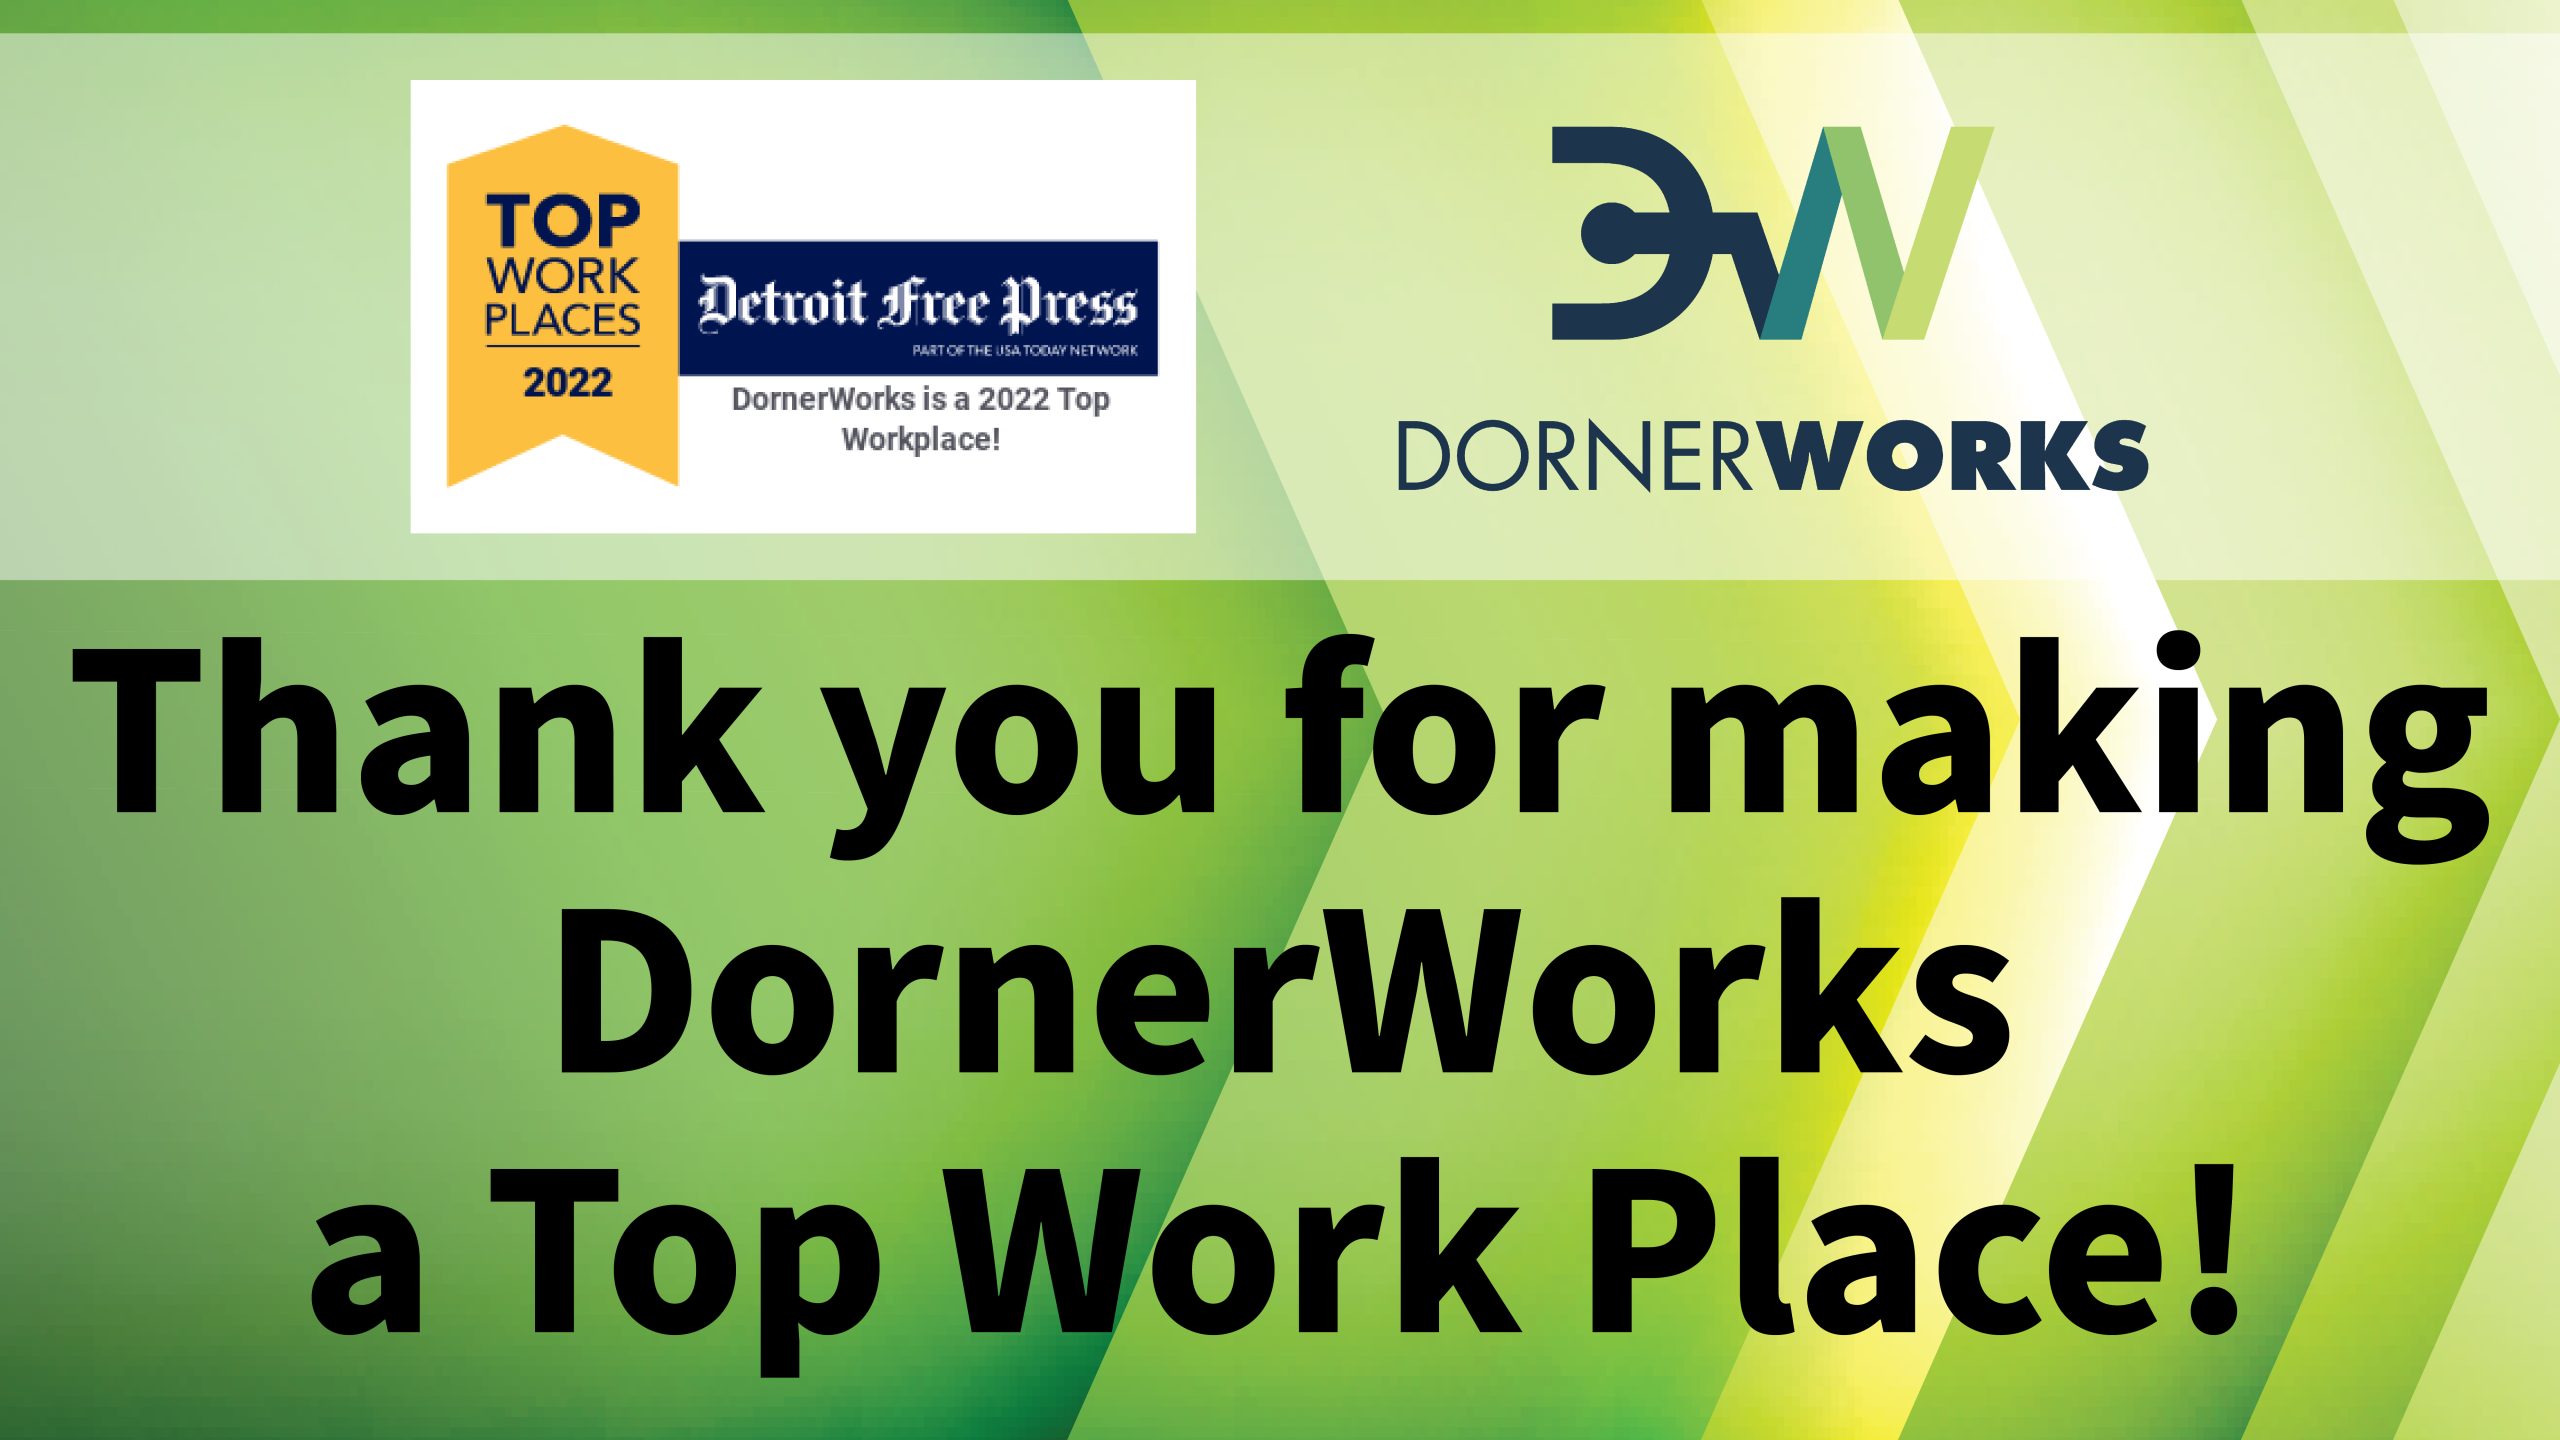 DornerWorks Named Detroit Free Press Top Work Place For 2022 DornerWorks